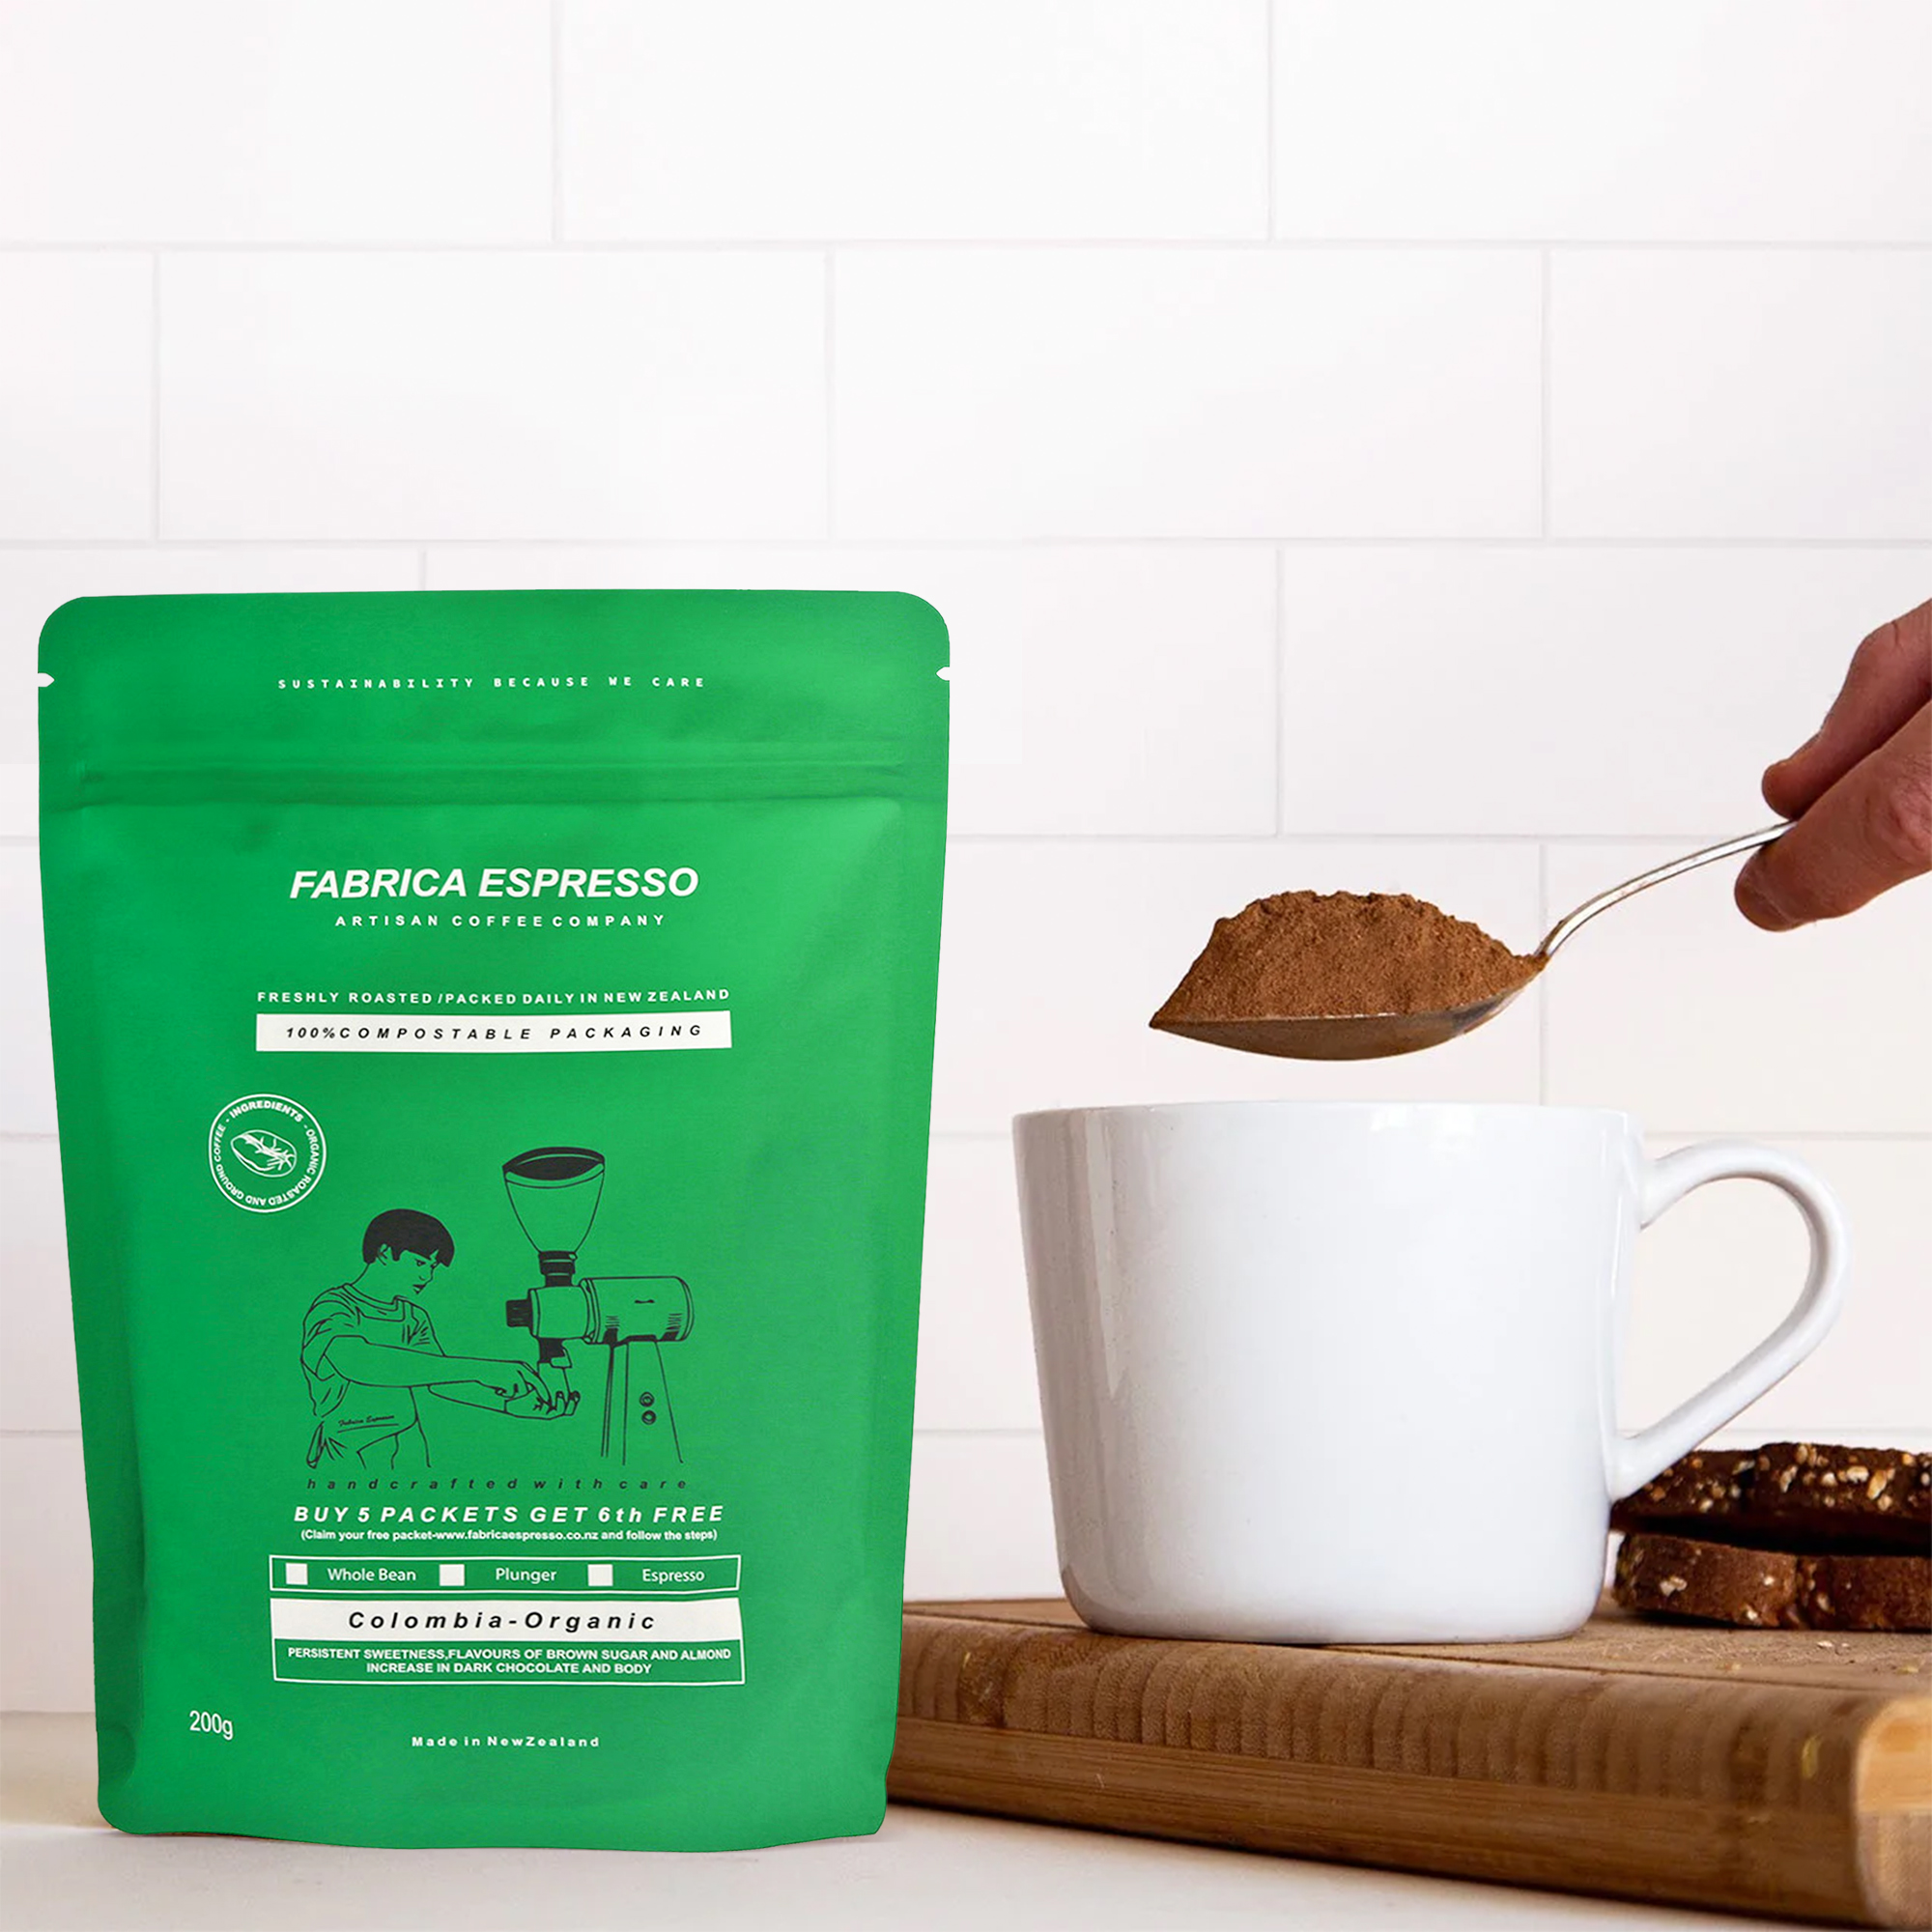 Biologisch abbaubare kompostierbare vegane Bio-Lebensmittelverpackung Standbeutel für Kaffee